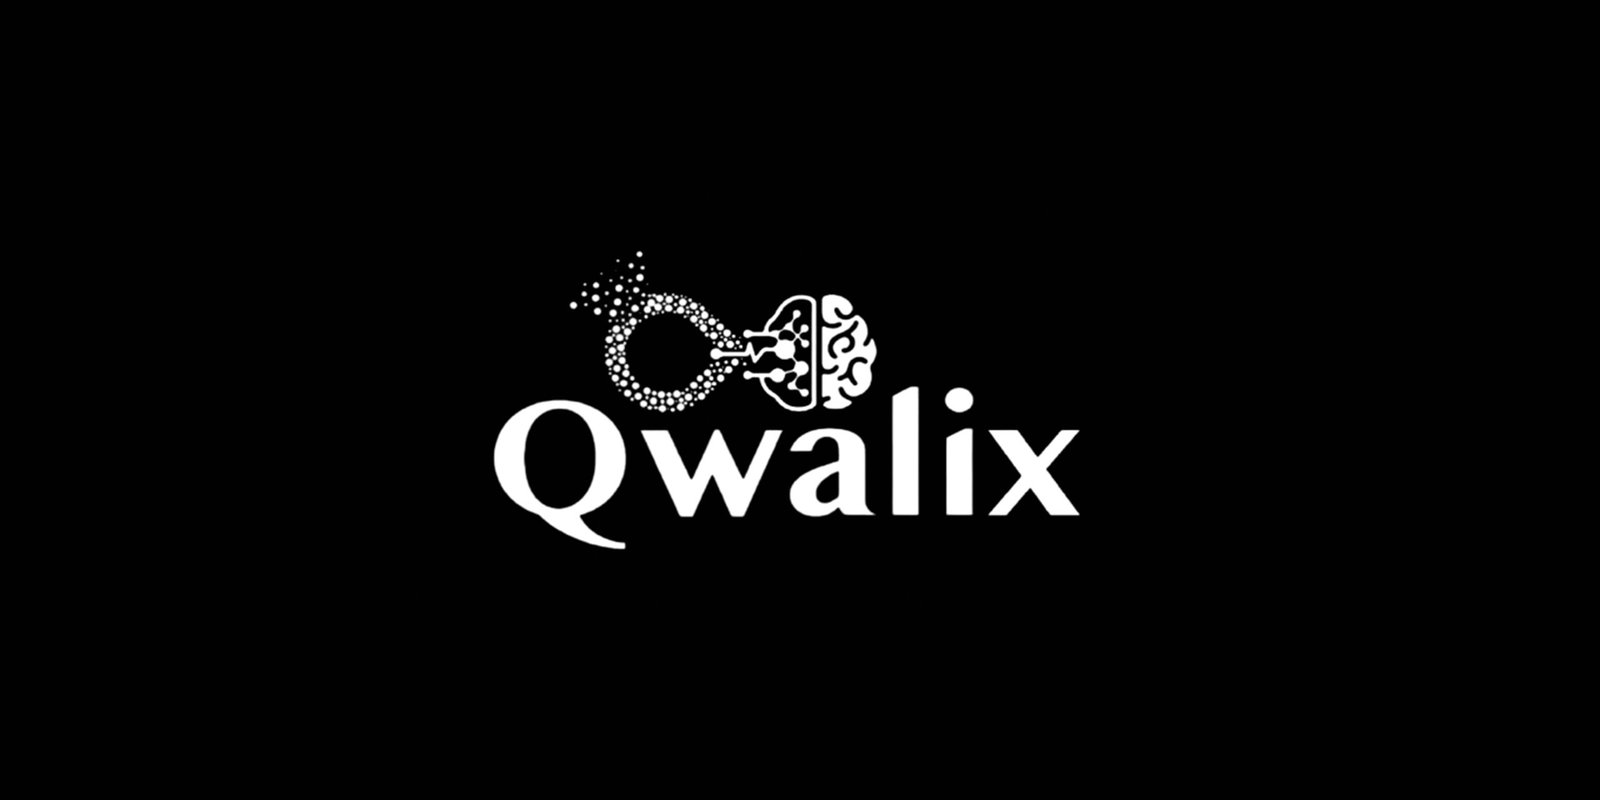 Qwalix